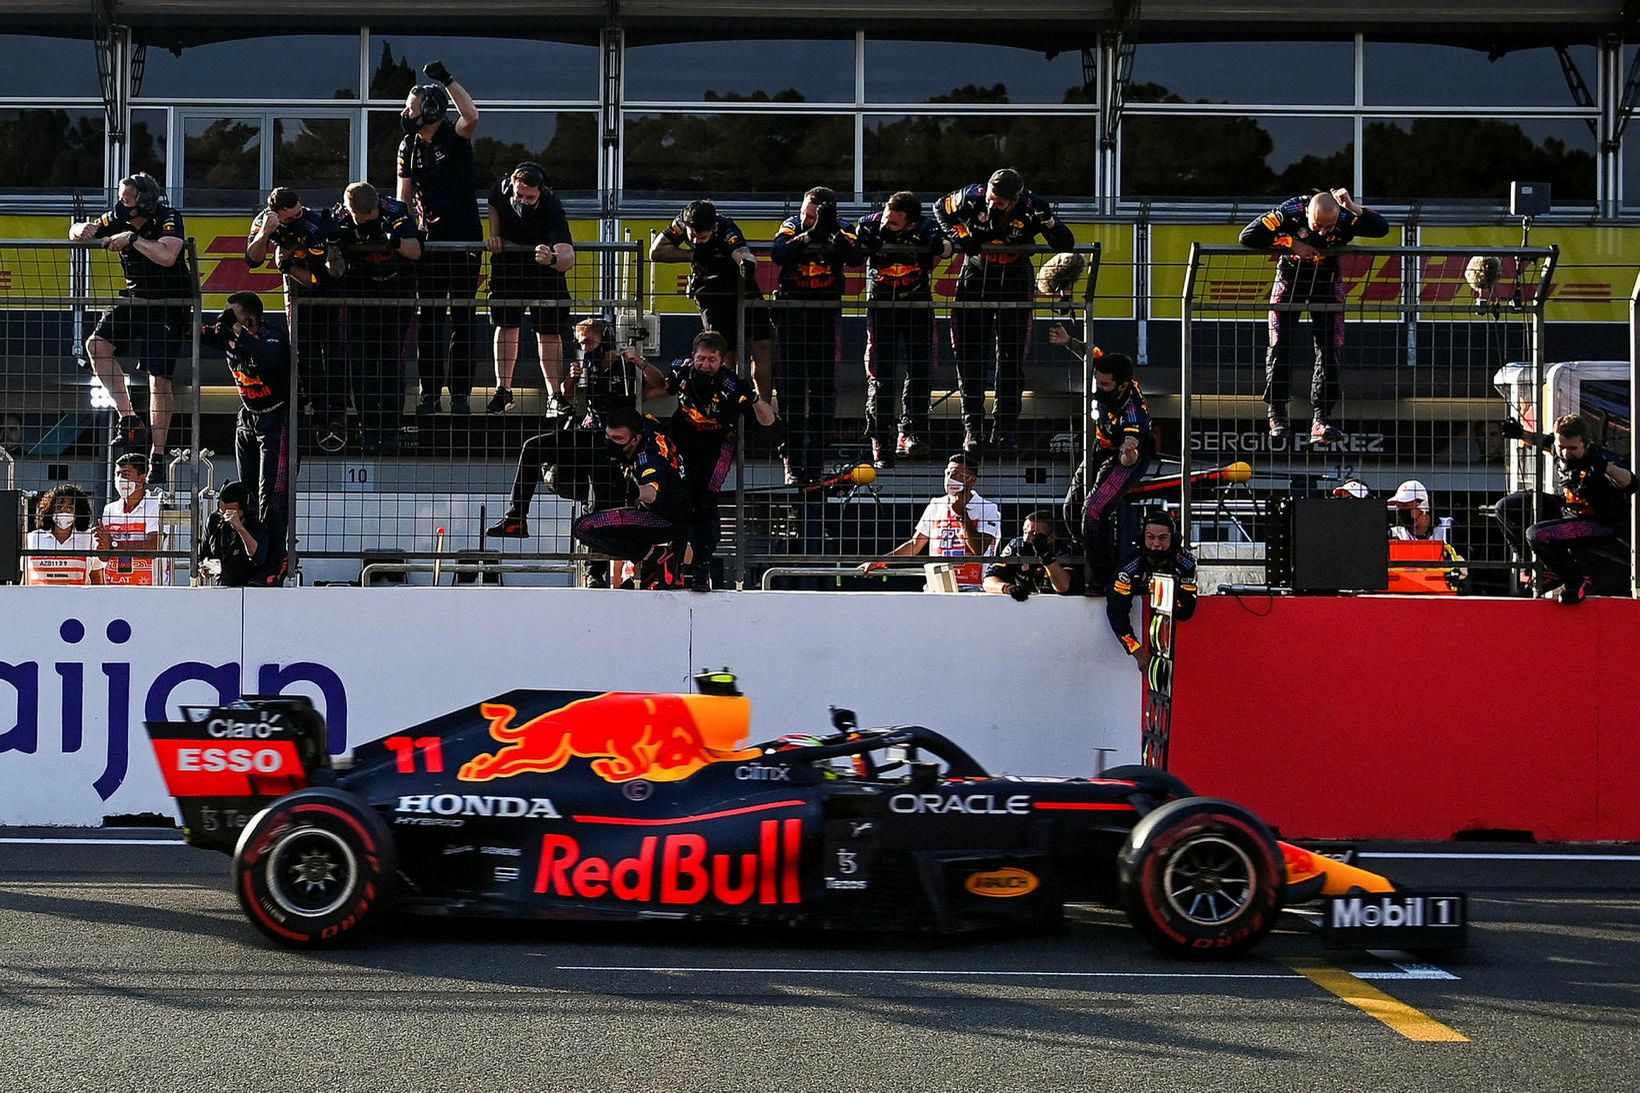 Liðsmenn Red Bull fagna Sergio Perez á endamarkinu í Bakú.